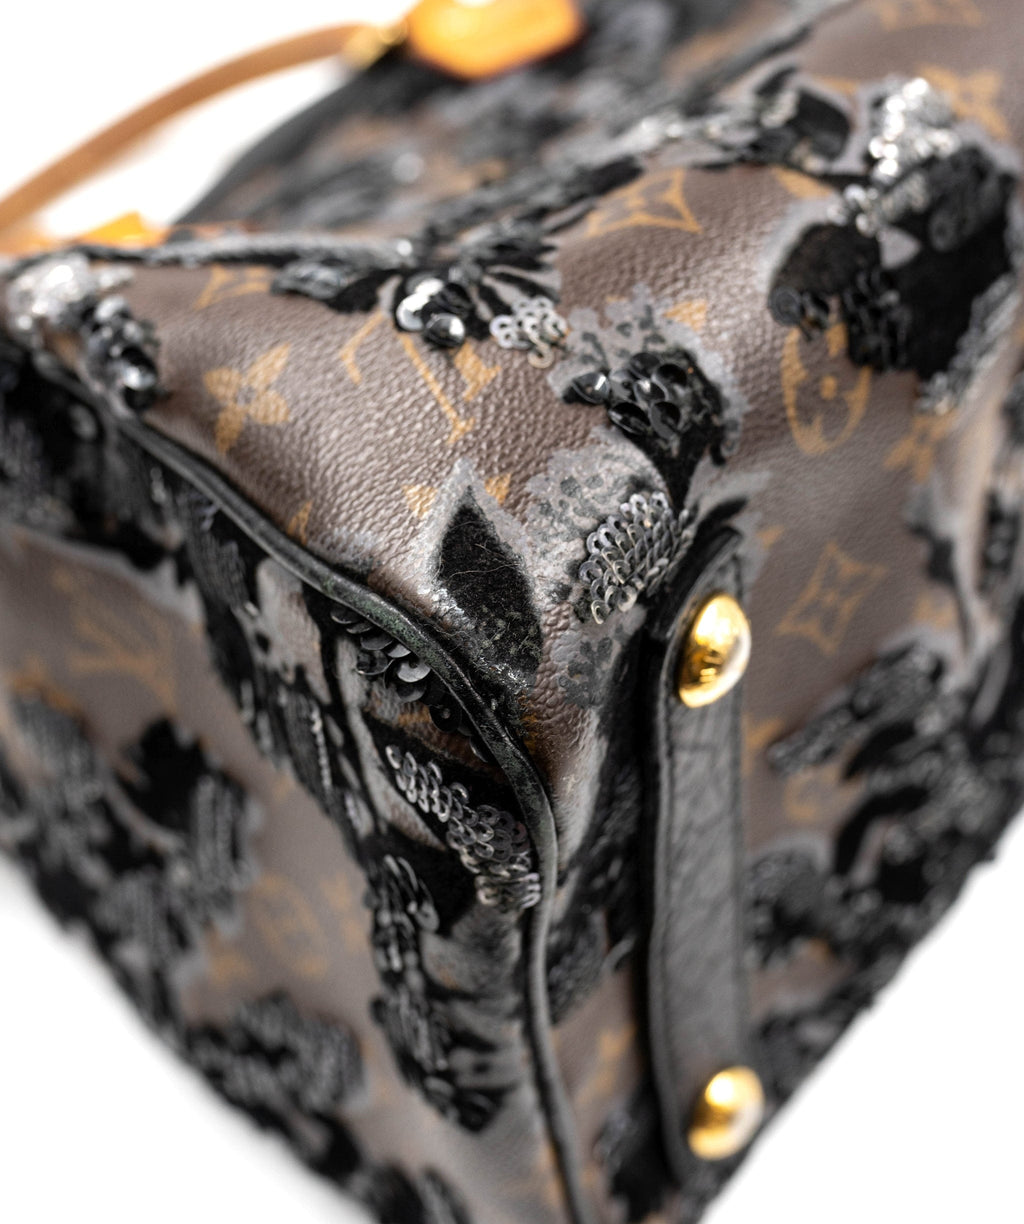 Louis Vuitton Black Sequin Monogram Eclipse Speedy 30 Leather ref